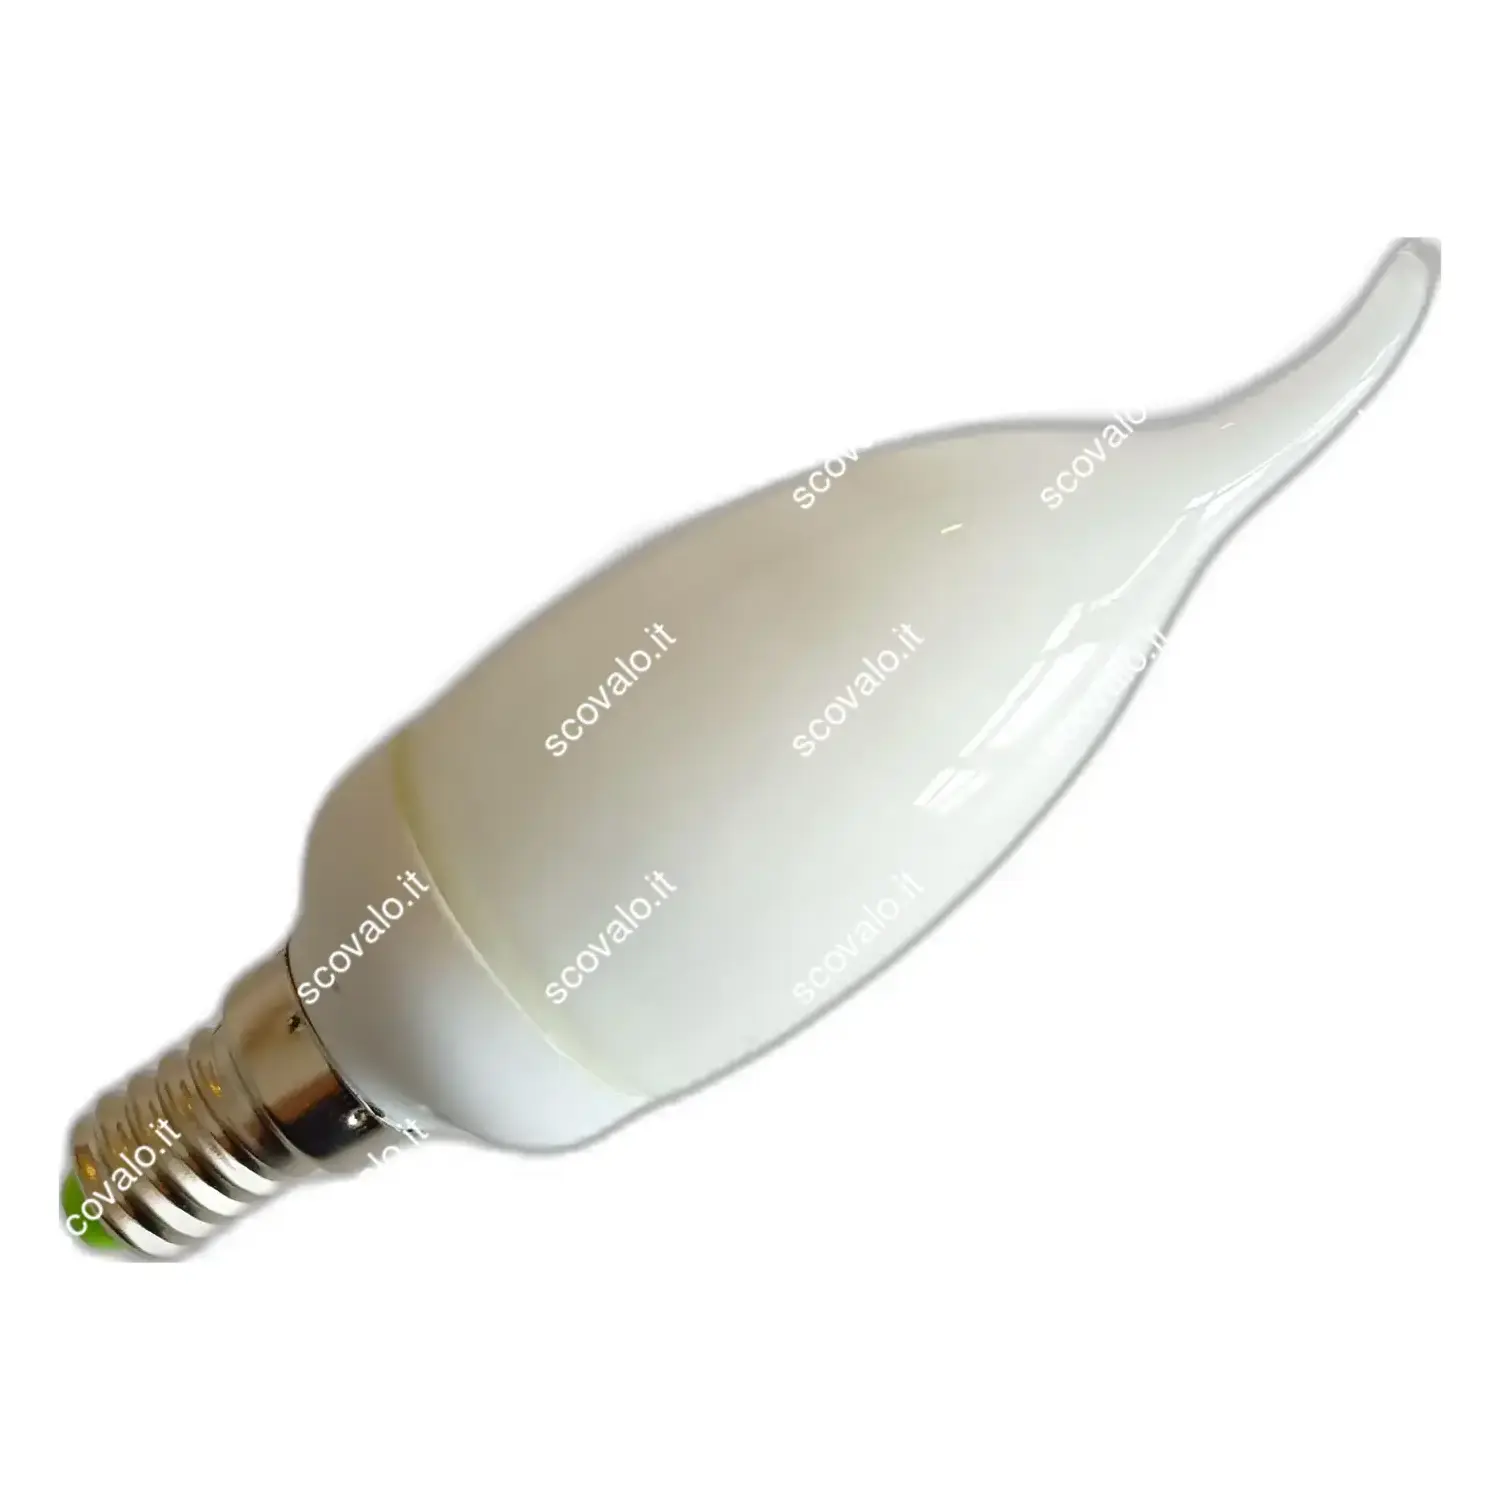 immagine lampadina risparmio energetico soffio vento e14 9 watt bianco freddo